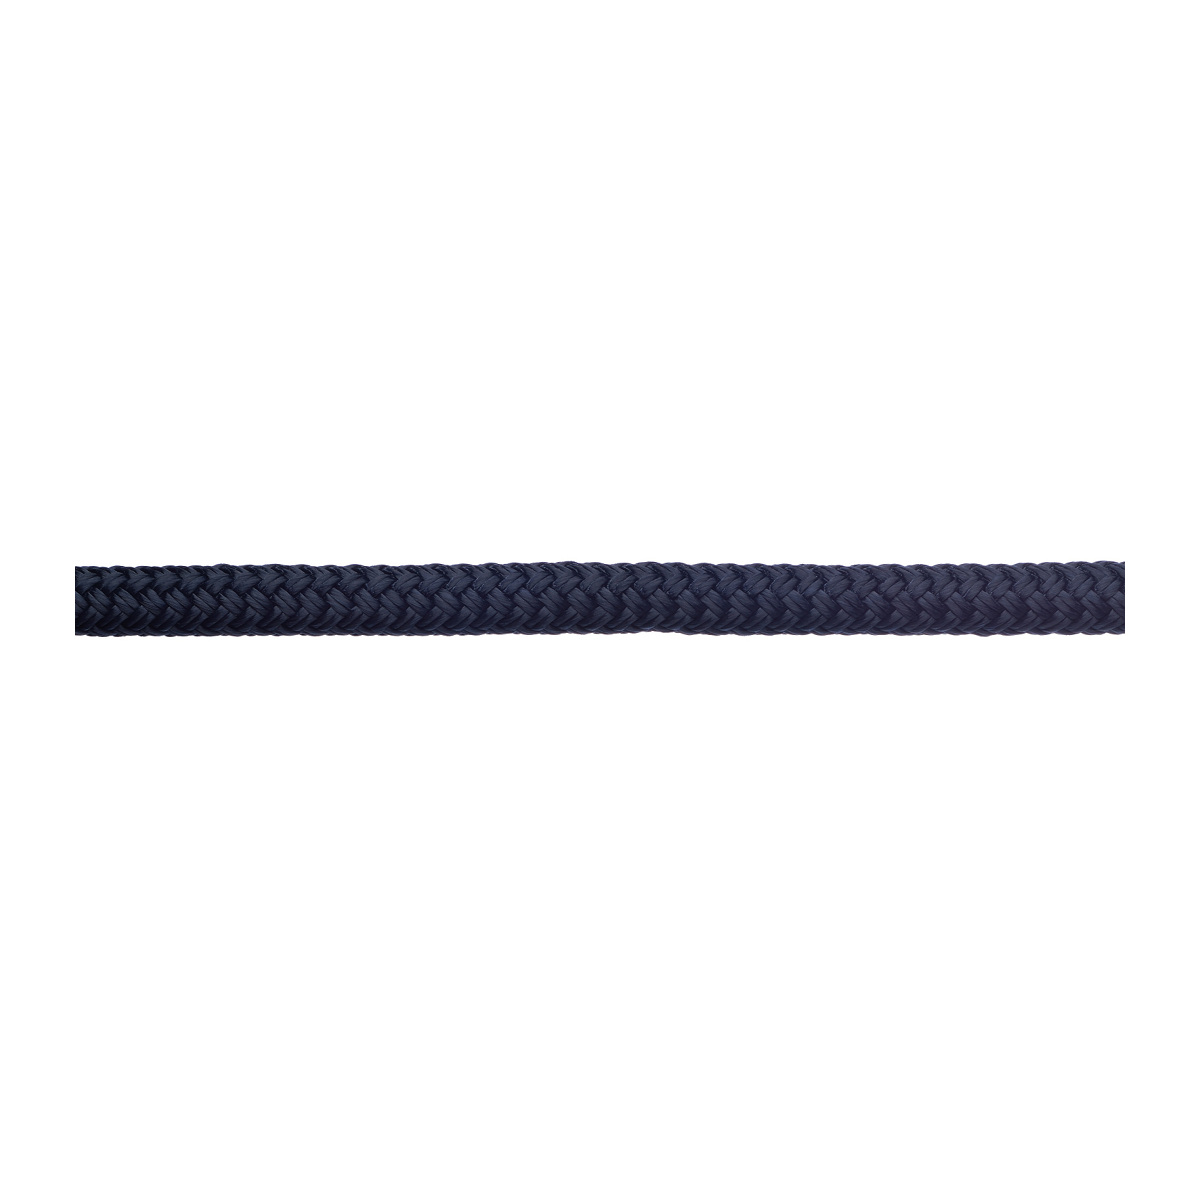 Robline amarre Rio 16mm longueur 8m navy/bleu